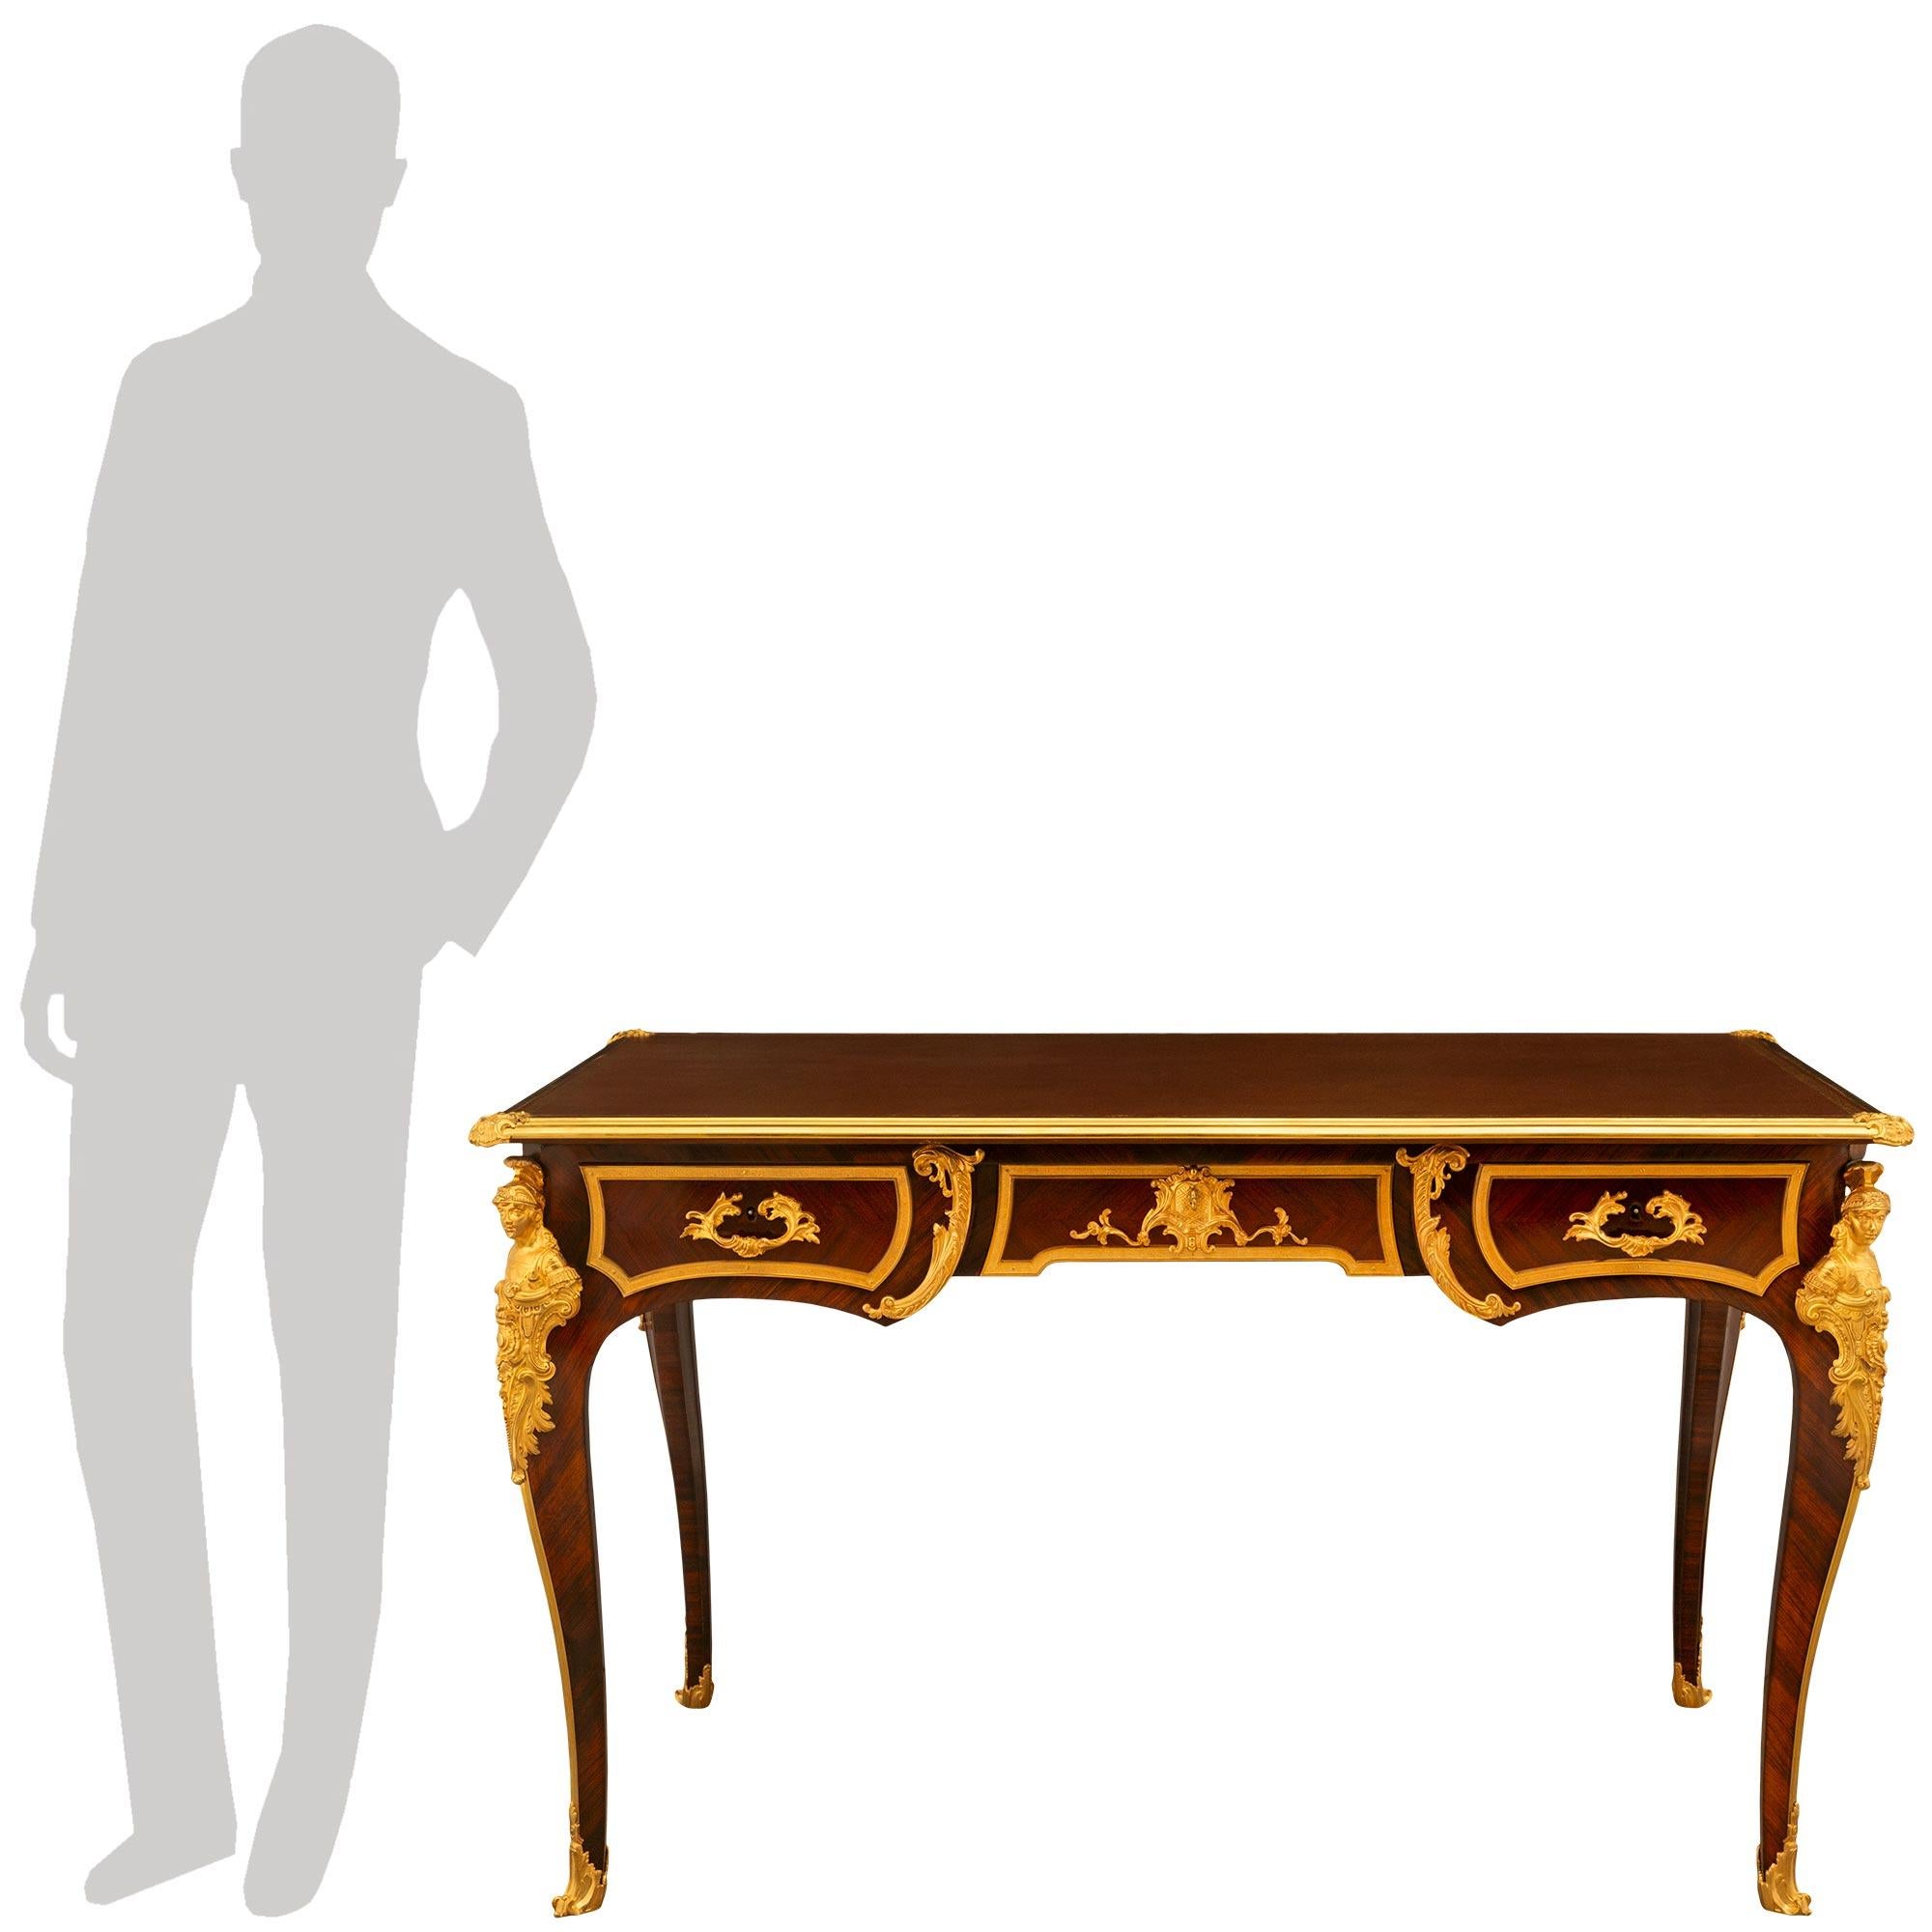 Superbe bureau plat en bois de roi et bronze doré de style Louis XV du 19e siècle. Le bureau est surélevé par d'élégants pieds cabriole avec de riches sabots en bronze doré. Des chutes en bronze doré relient les montures d'angle en bronze doré